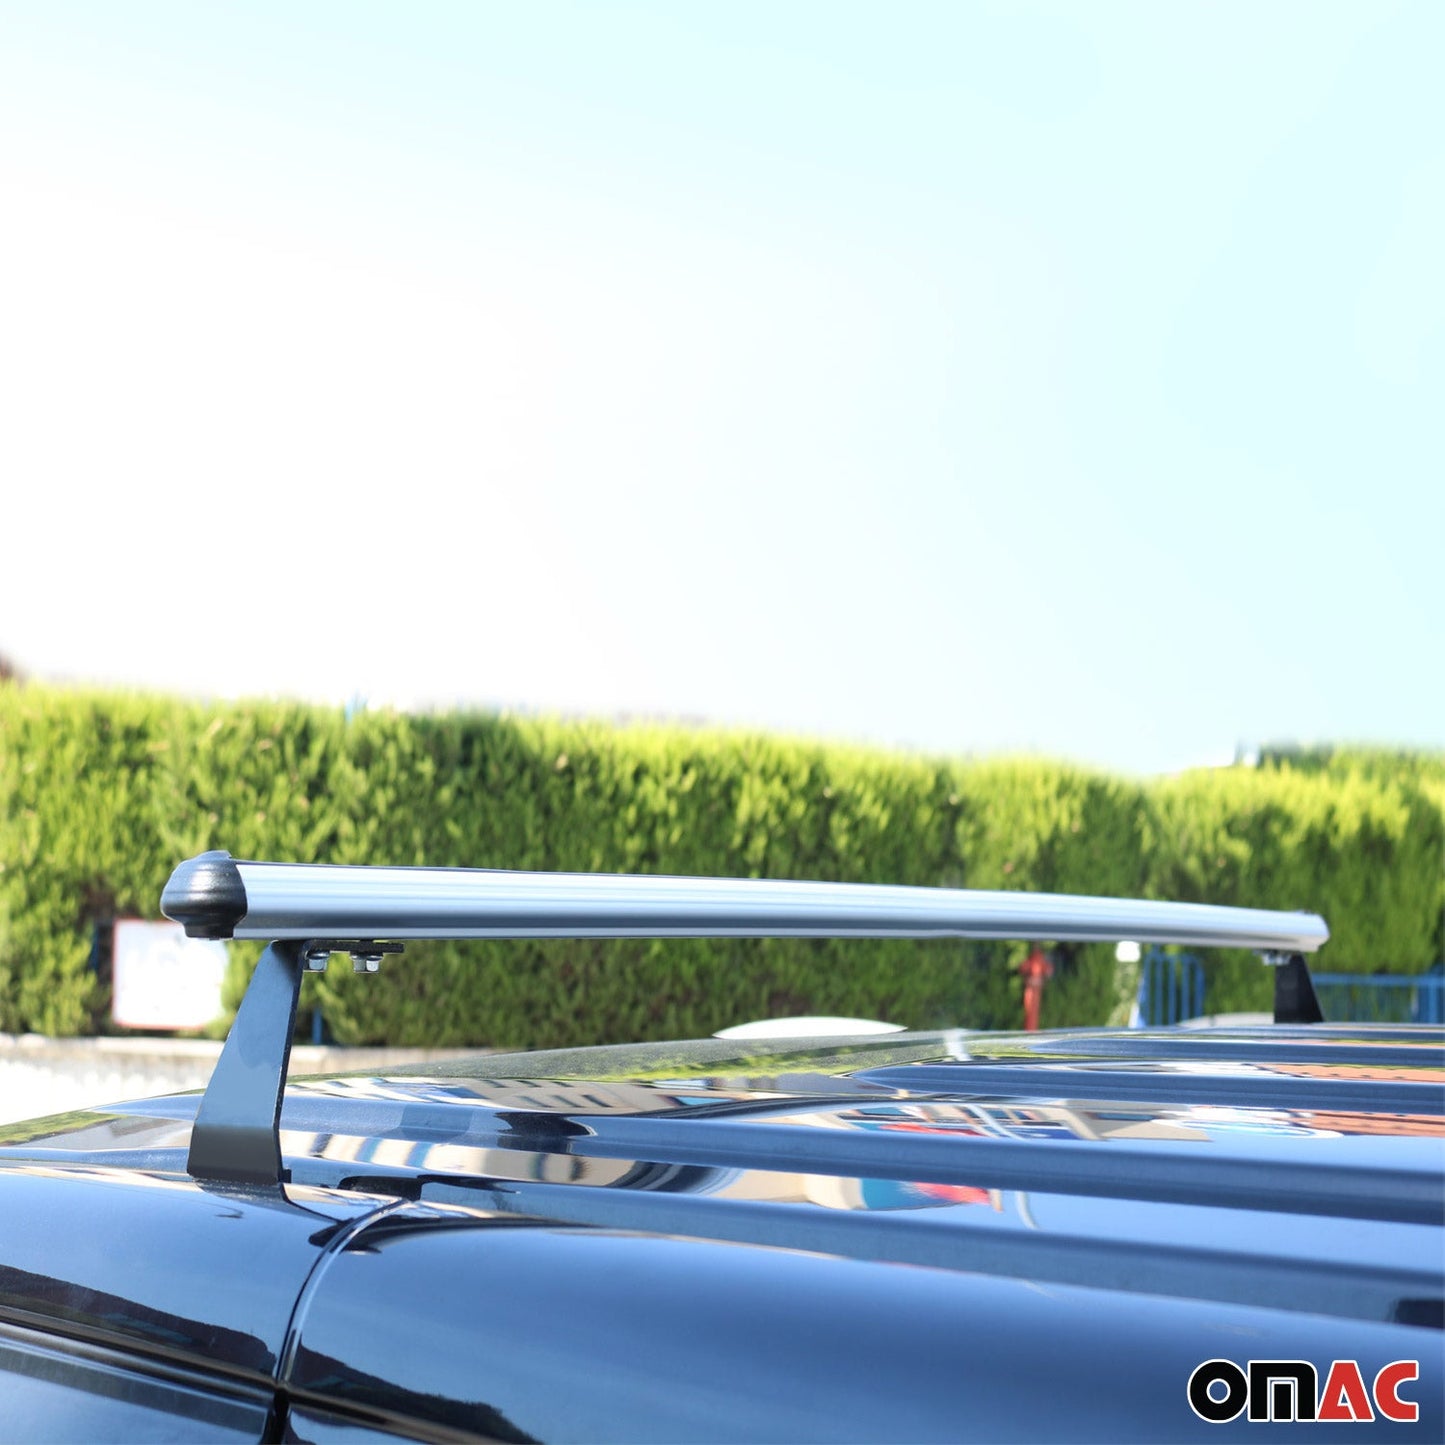 OMAC Trunk Bed Carrier Roof Racks Cross Bars for Honda CR-V 2017-2022 Alu Silver 2x '3414920